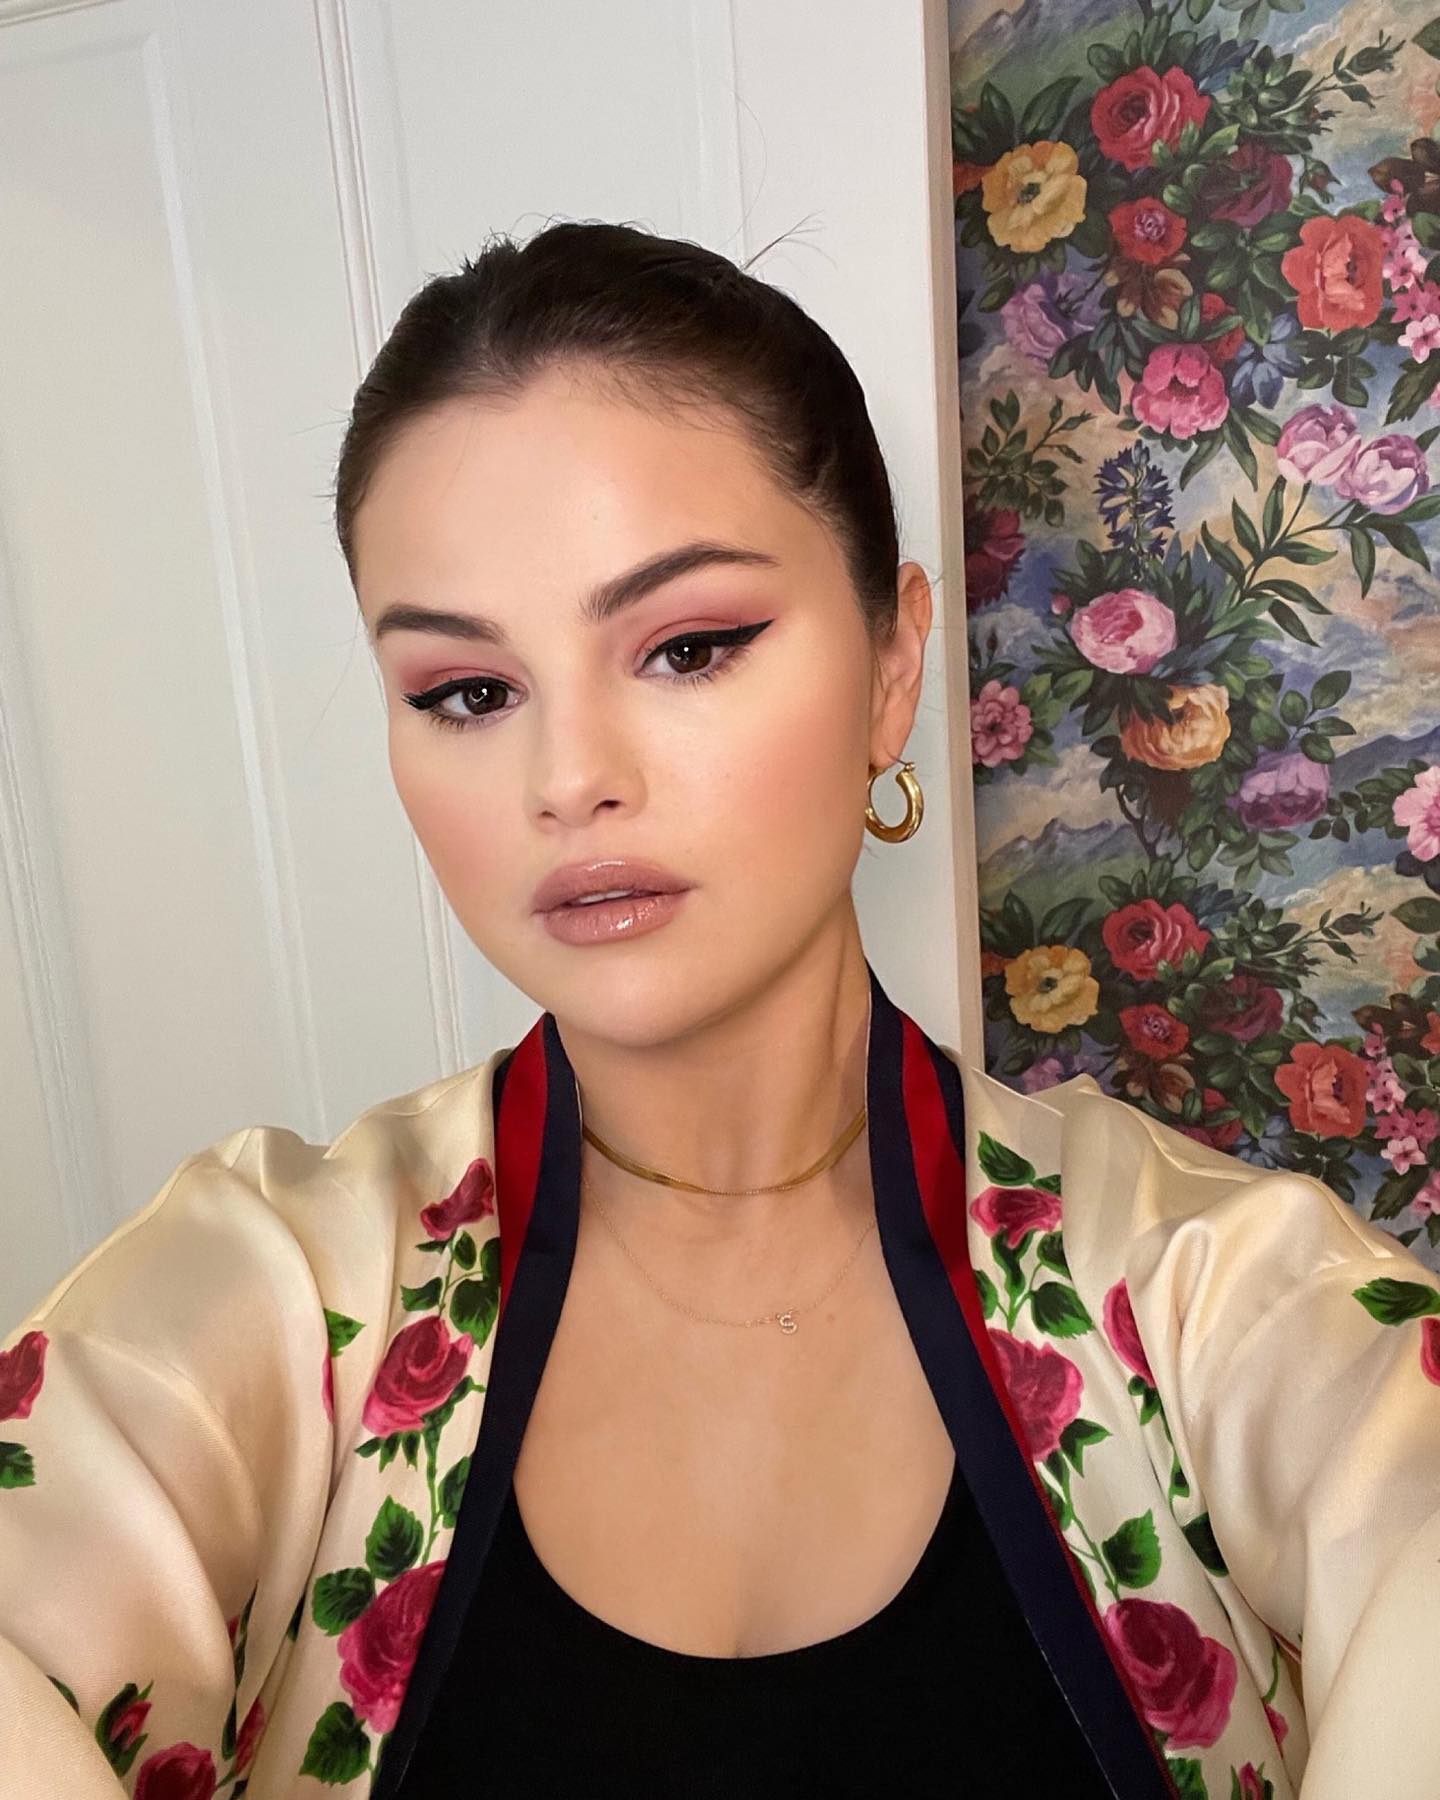 PHOTOS Selena Gomez partage un tutoriel de maquillage tard dans la nuit!